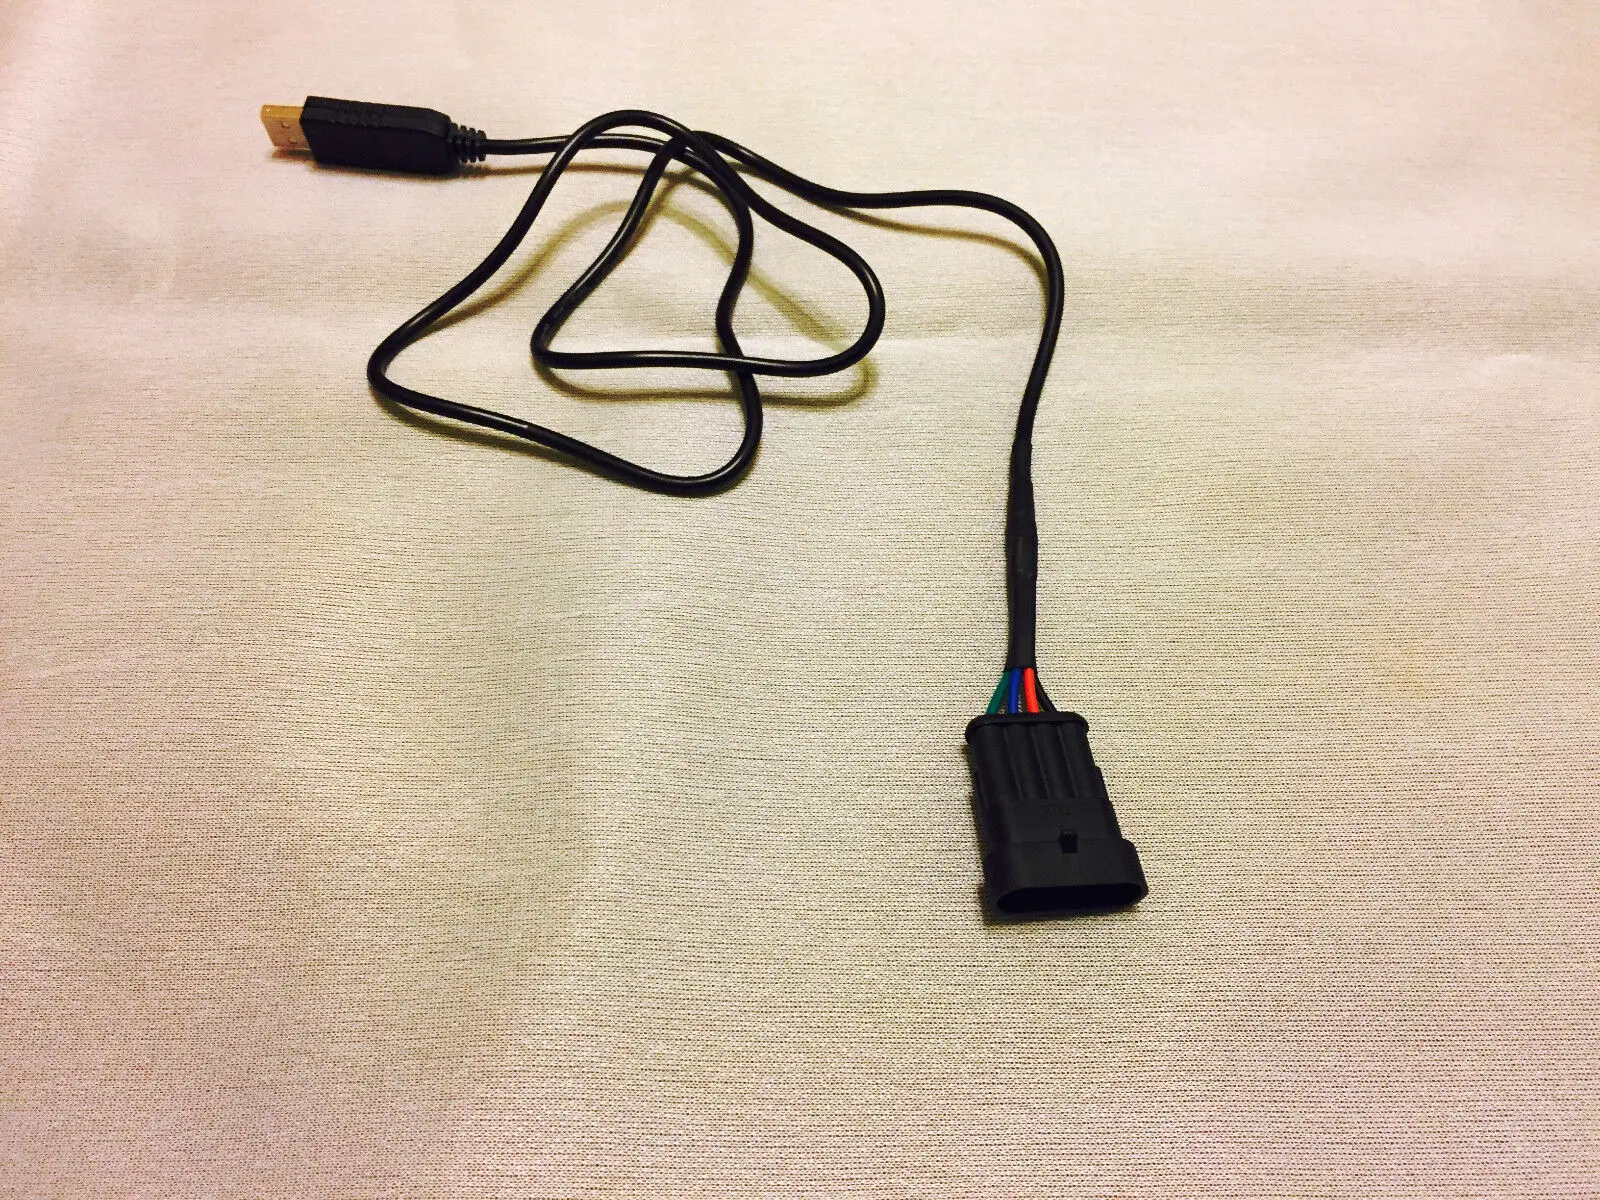 USB LPG диагностический интерфейсный кабель AG AUTOGAS ITALIA AUTRONIC EMMEGAS+ программное обеспечение